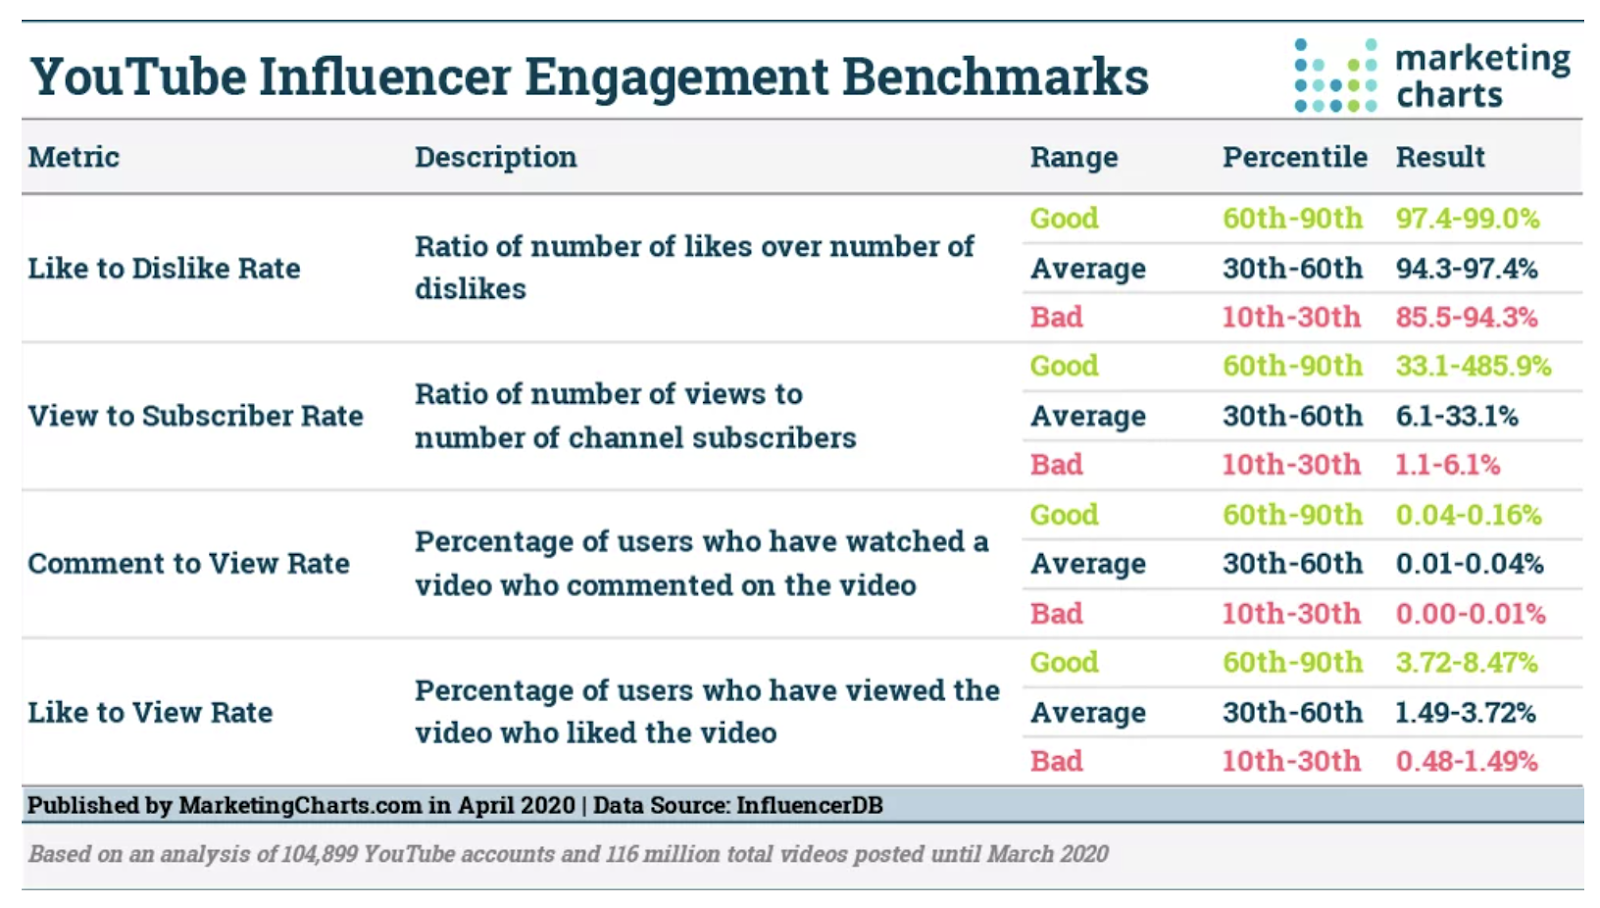 YouTube engagement benchmarks chart